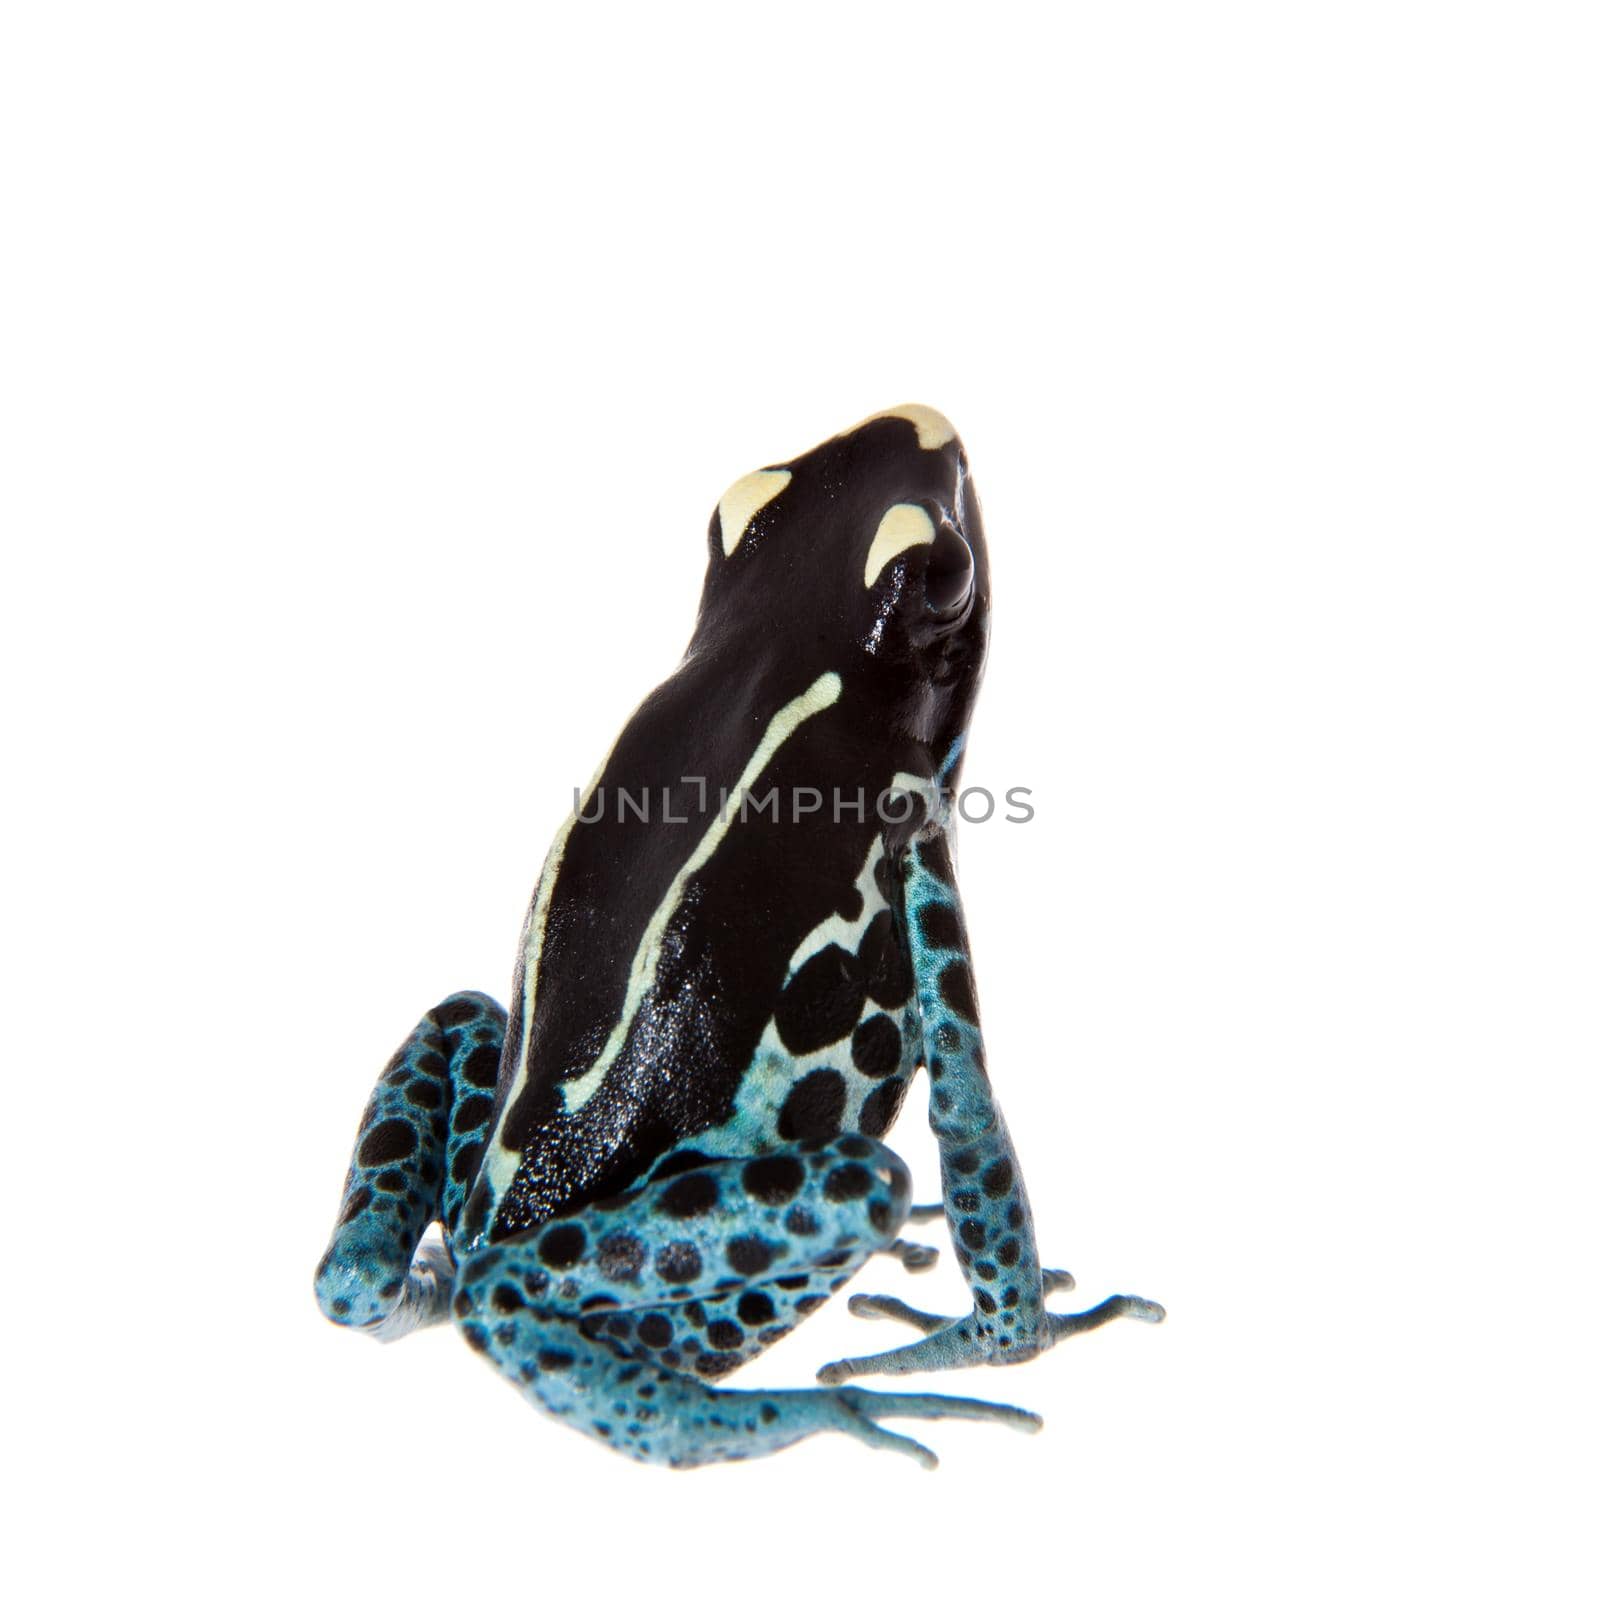 Awarape Dyeing Poison dart frog, Dendrobates tinctorius, on white by RosaJay